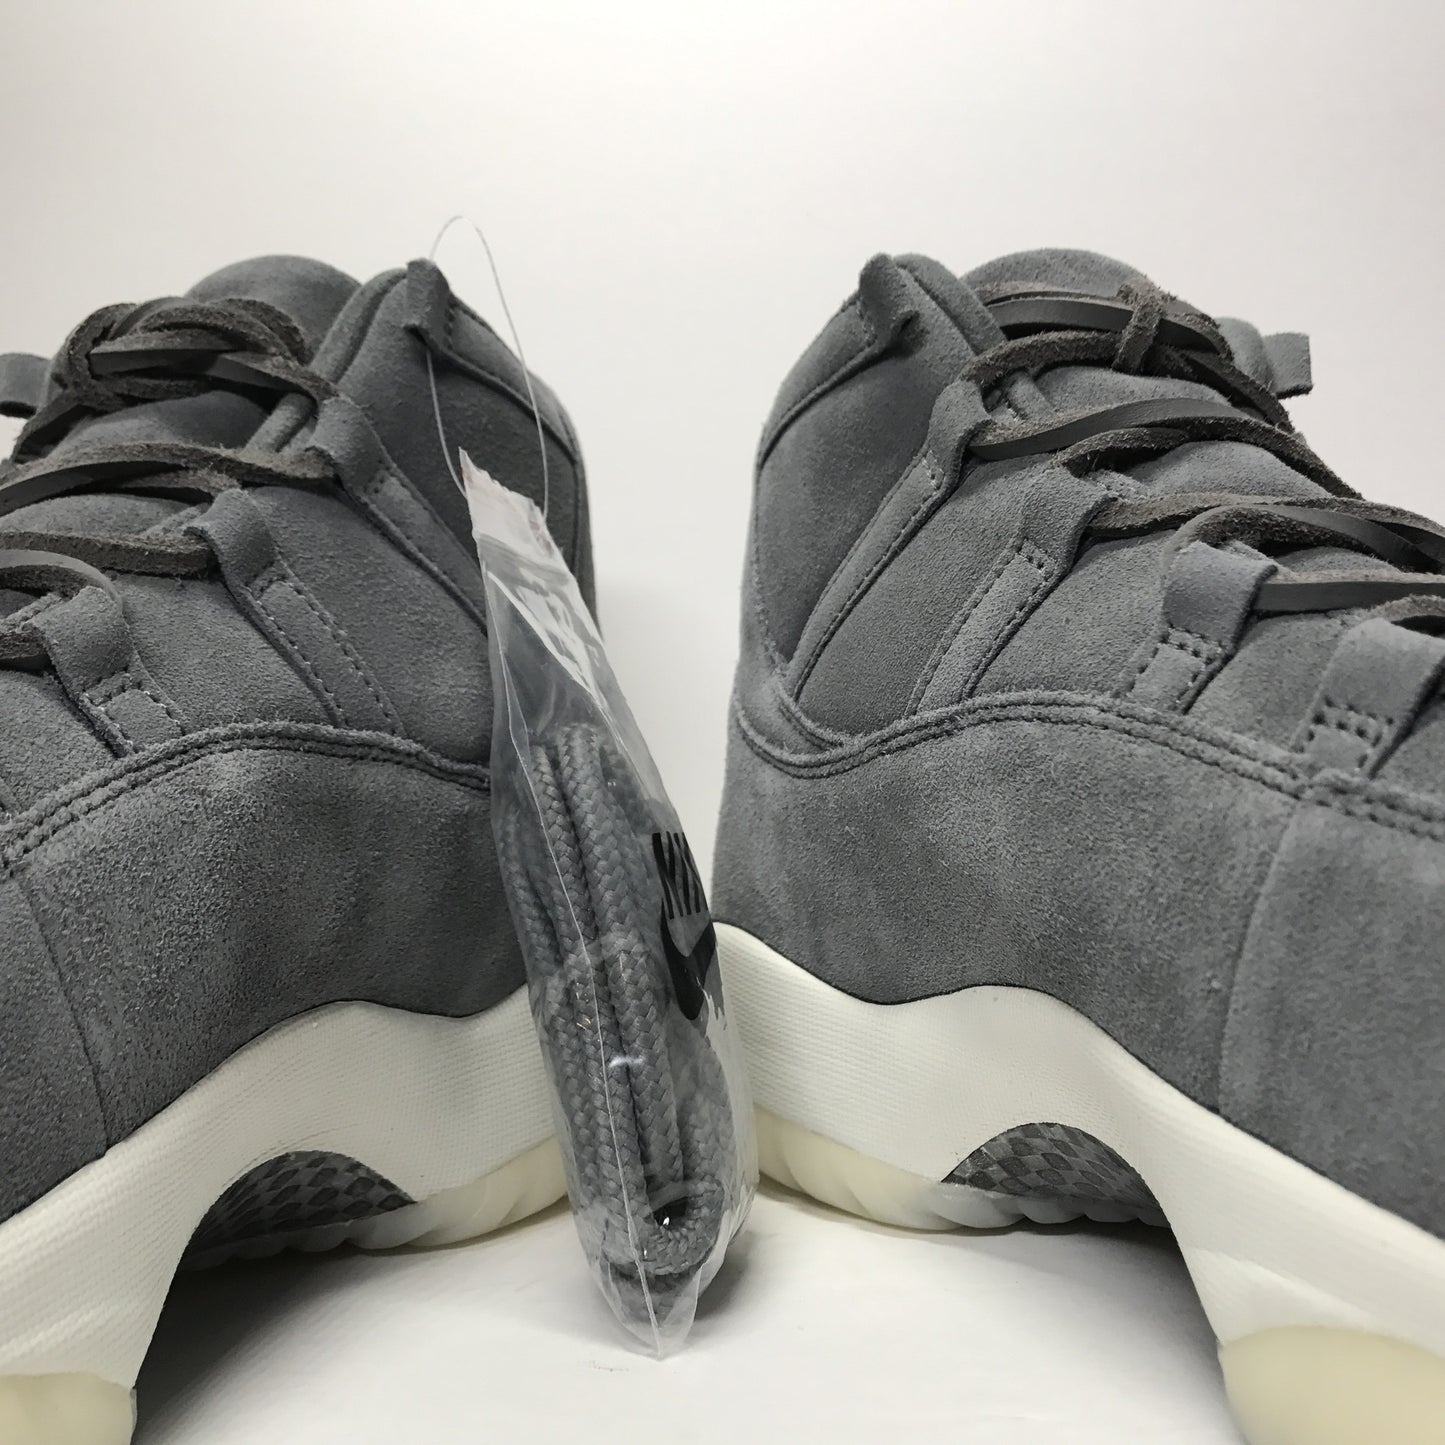 DS Nike Air Jordan 11 XI Retro Prem Pinnacle Grey Suede Size 15